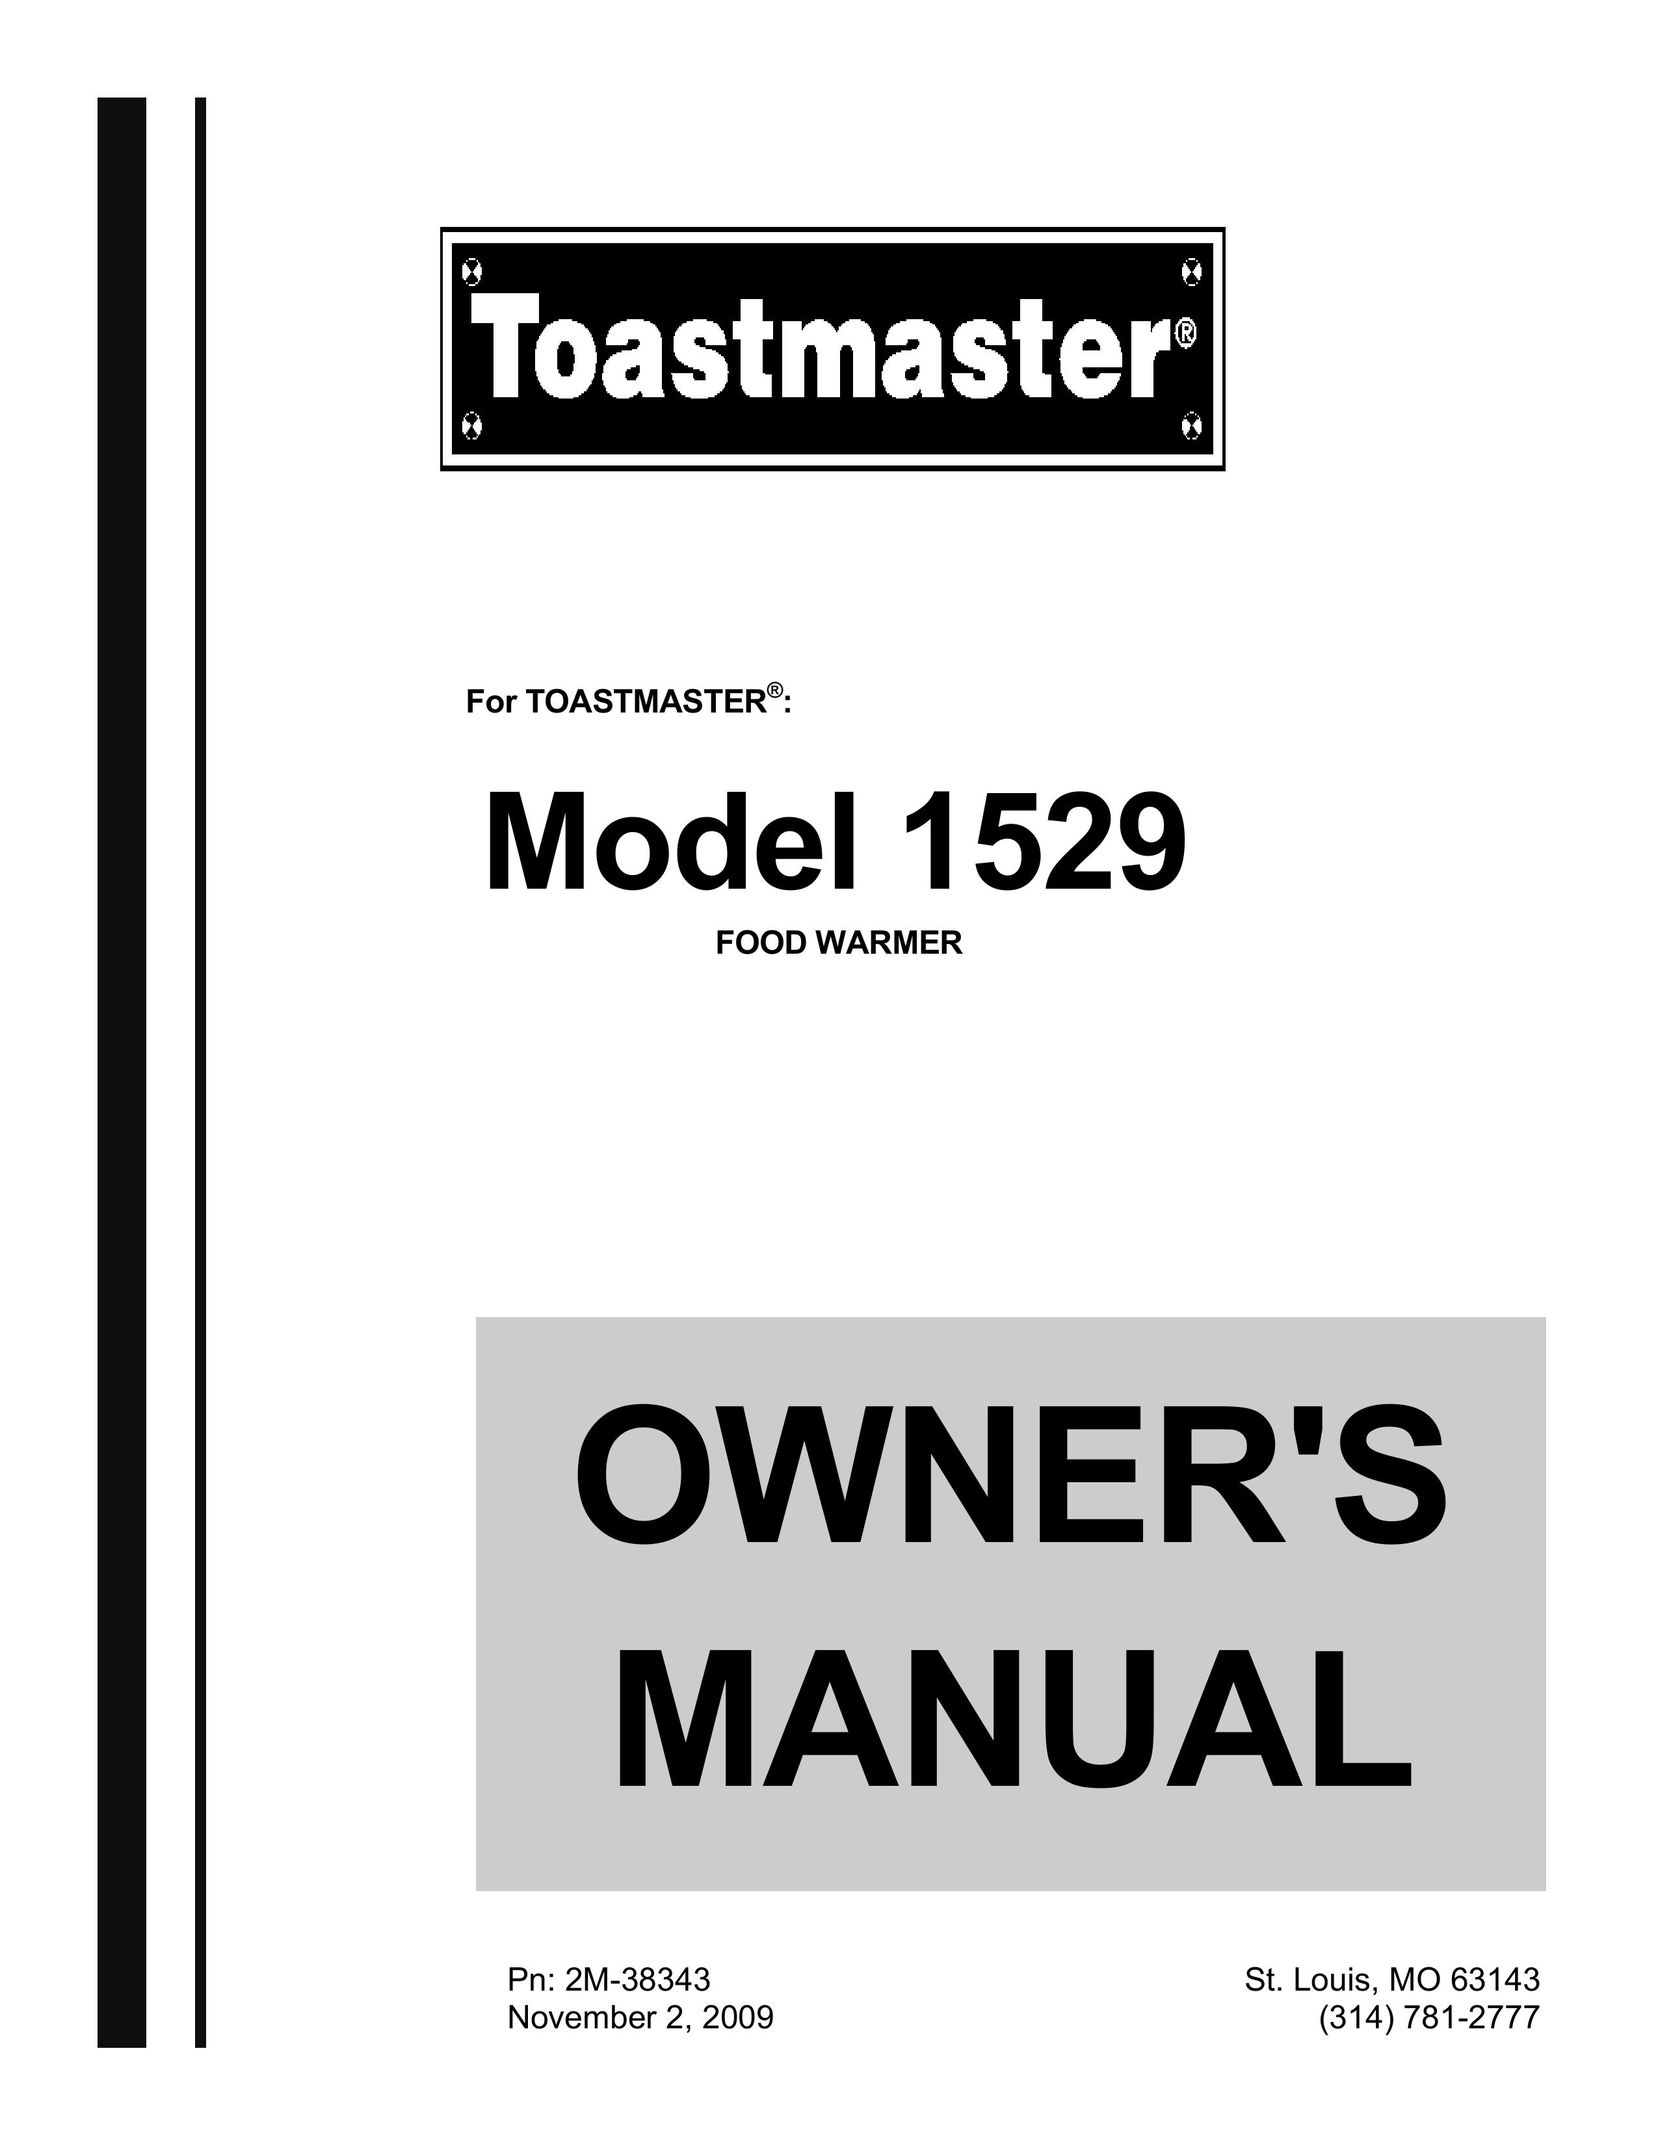 Toastmaster 1529 Food Warmer User Manual